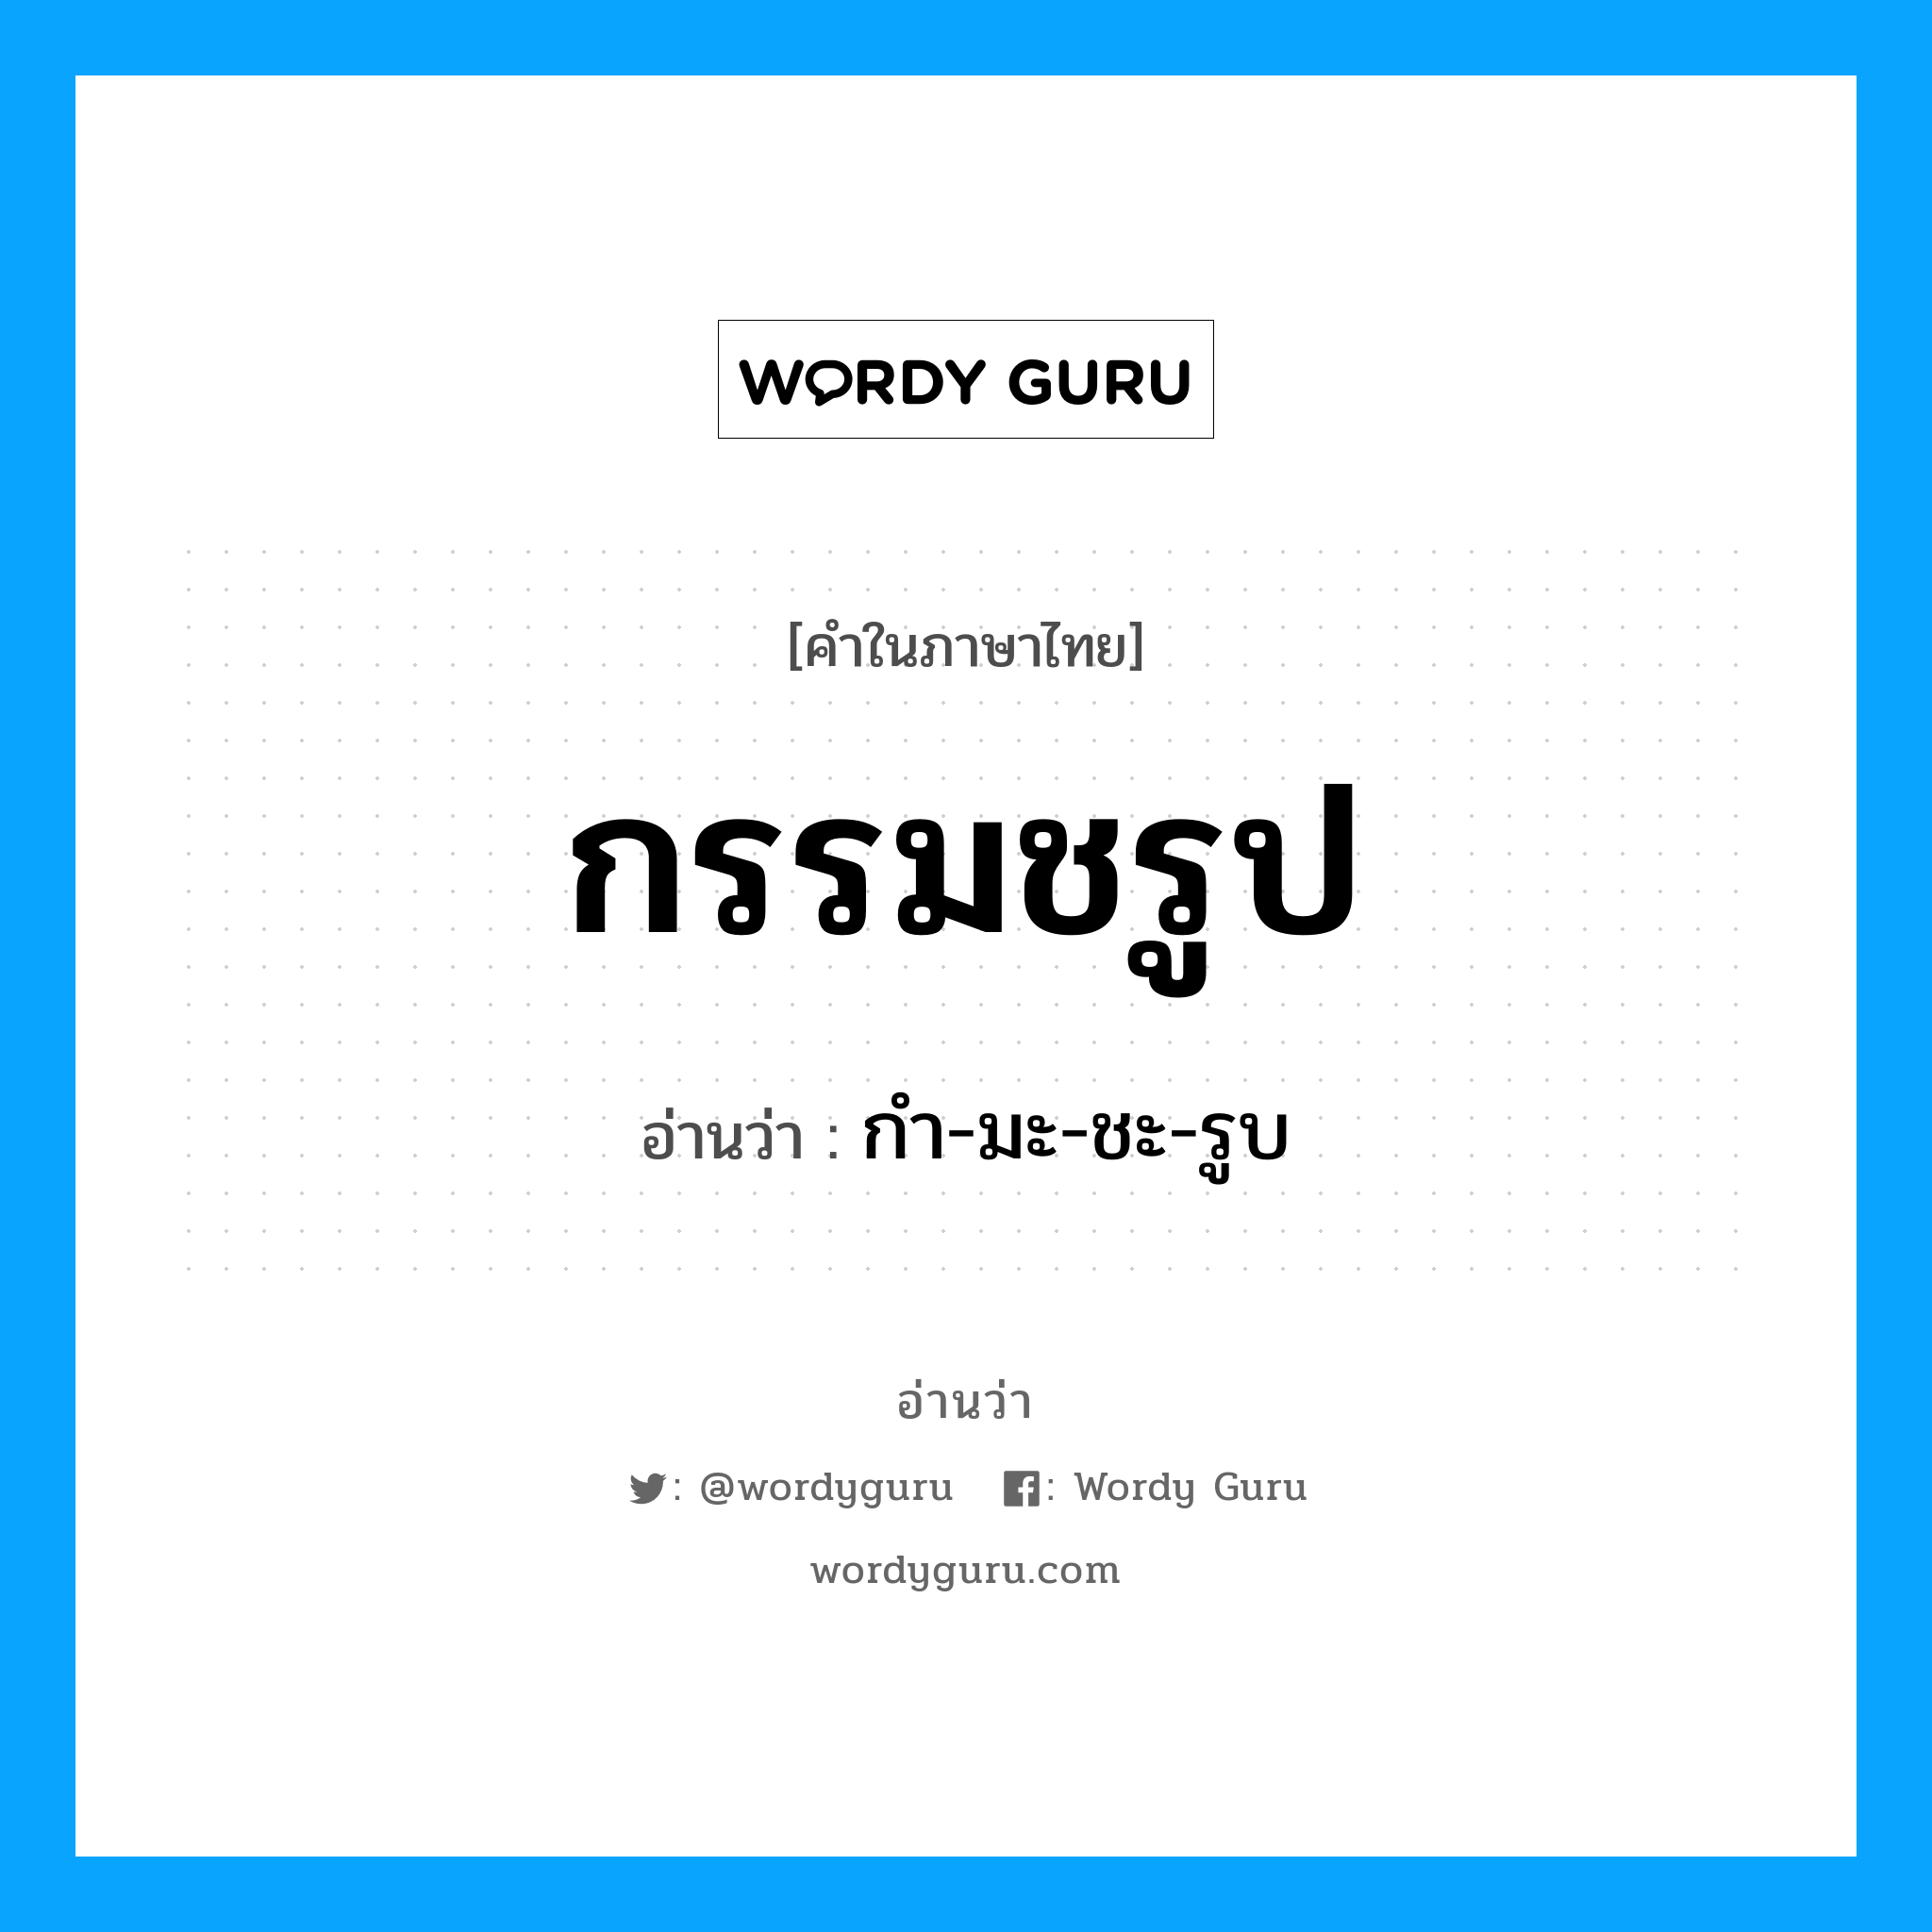 กํา-มะ-ชะ-รูบ เป็นคำอ่านของคำไหน?, คำในภาษาไทย กํา-มะ-ชะ-รูบ อ่านว่า กรรมชรูป